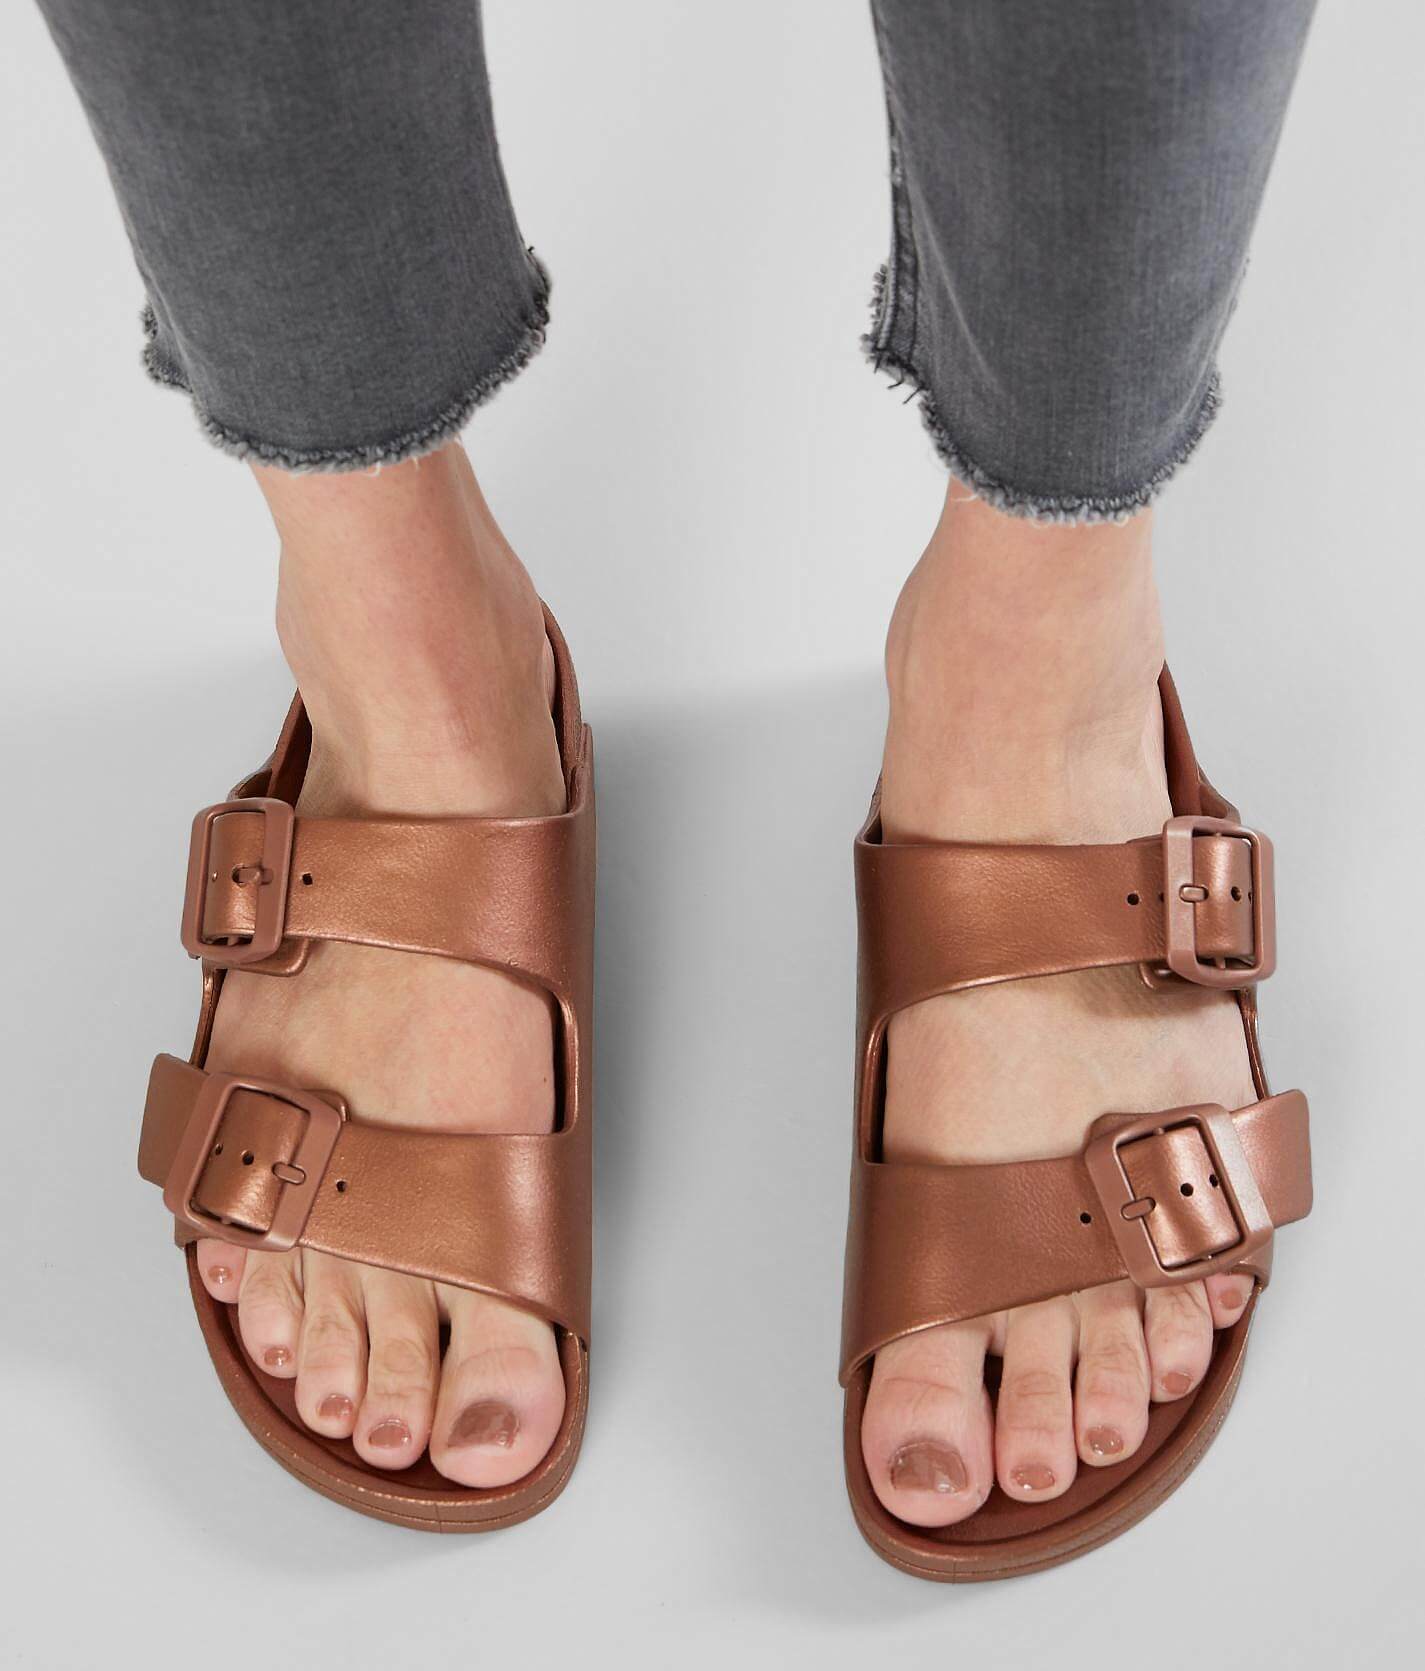 rubber double strap sandals